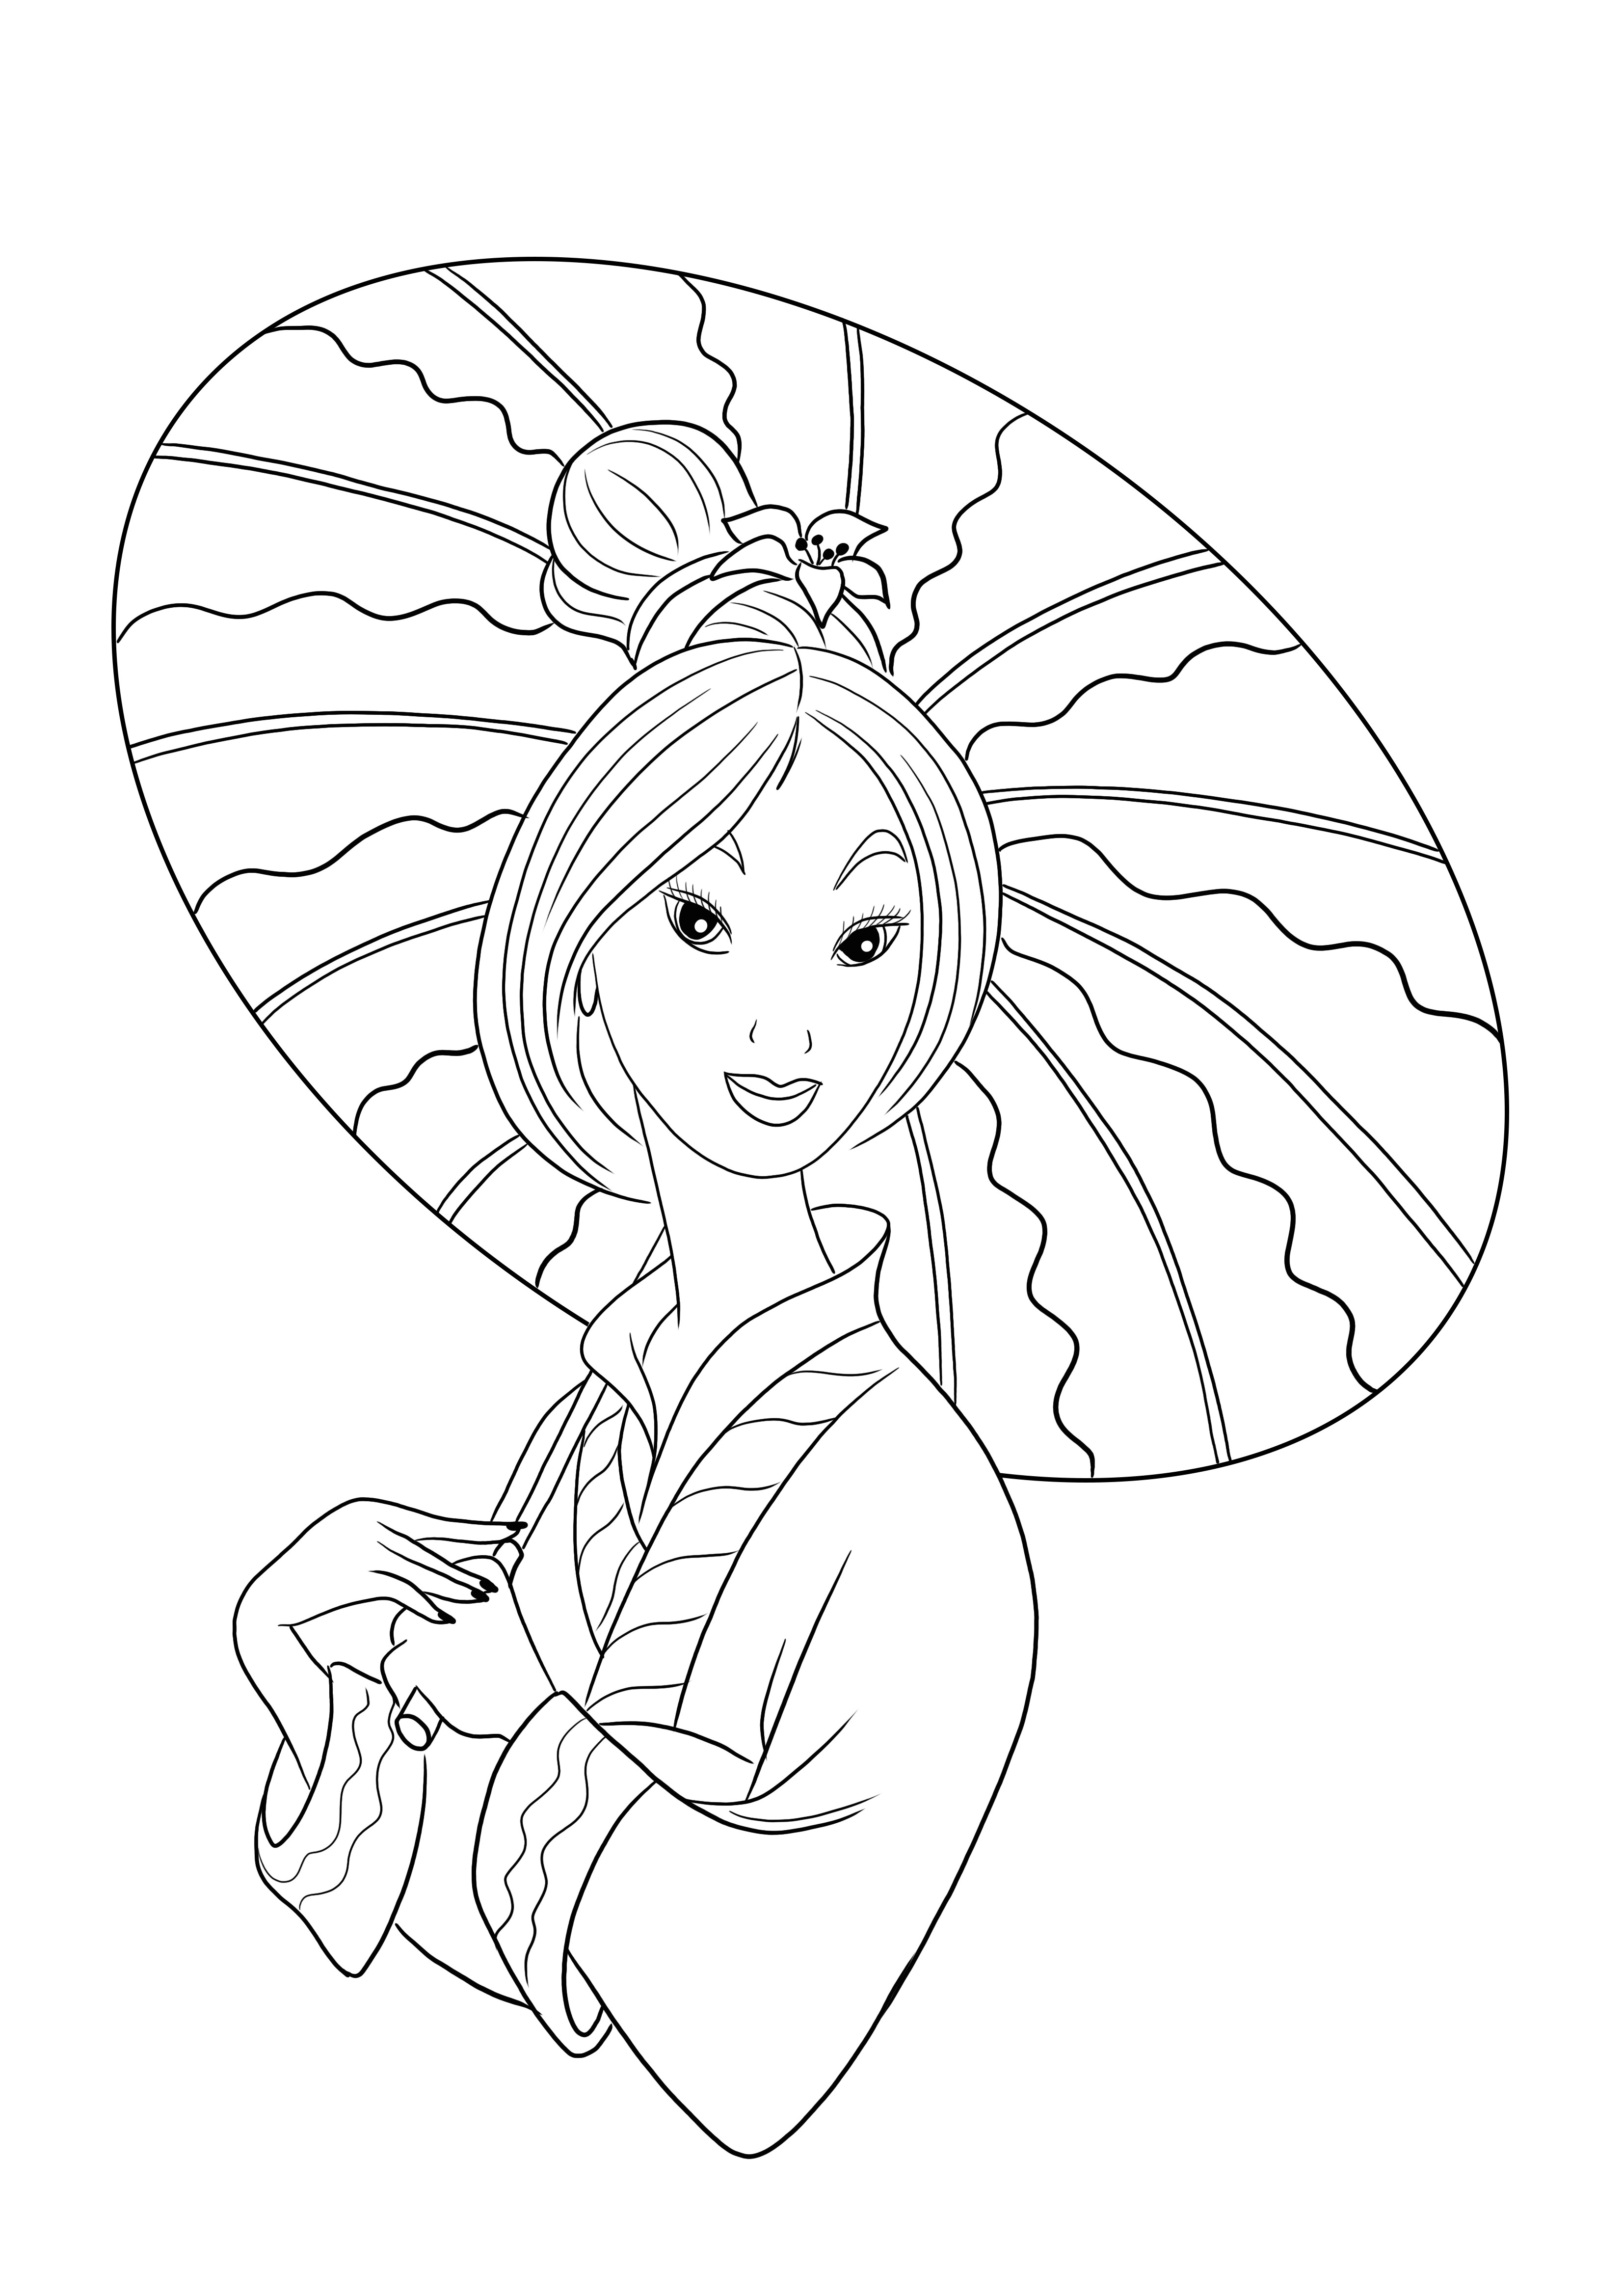 Putri Mulan gratis untuk mewarnai dan mencetak gambar untuk bersenang-senang anak-anak